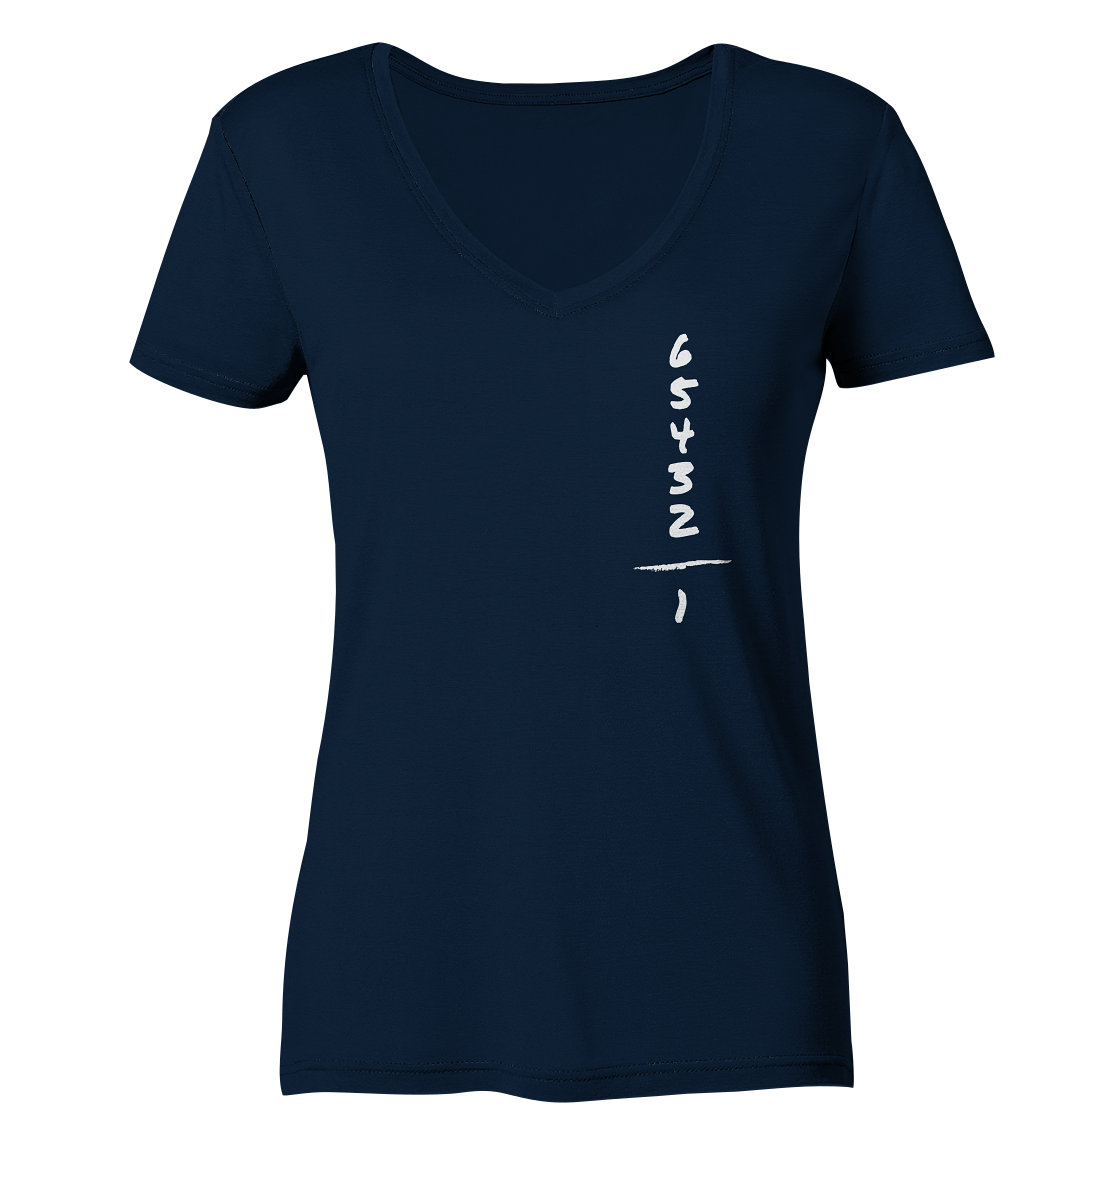 Bequemes Damen-T-Shirt mit Motorradgänge-Spruch: "One down - five up" | V-Ausschnitt, blau